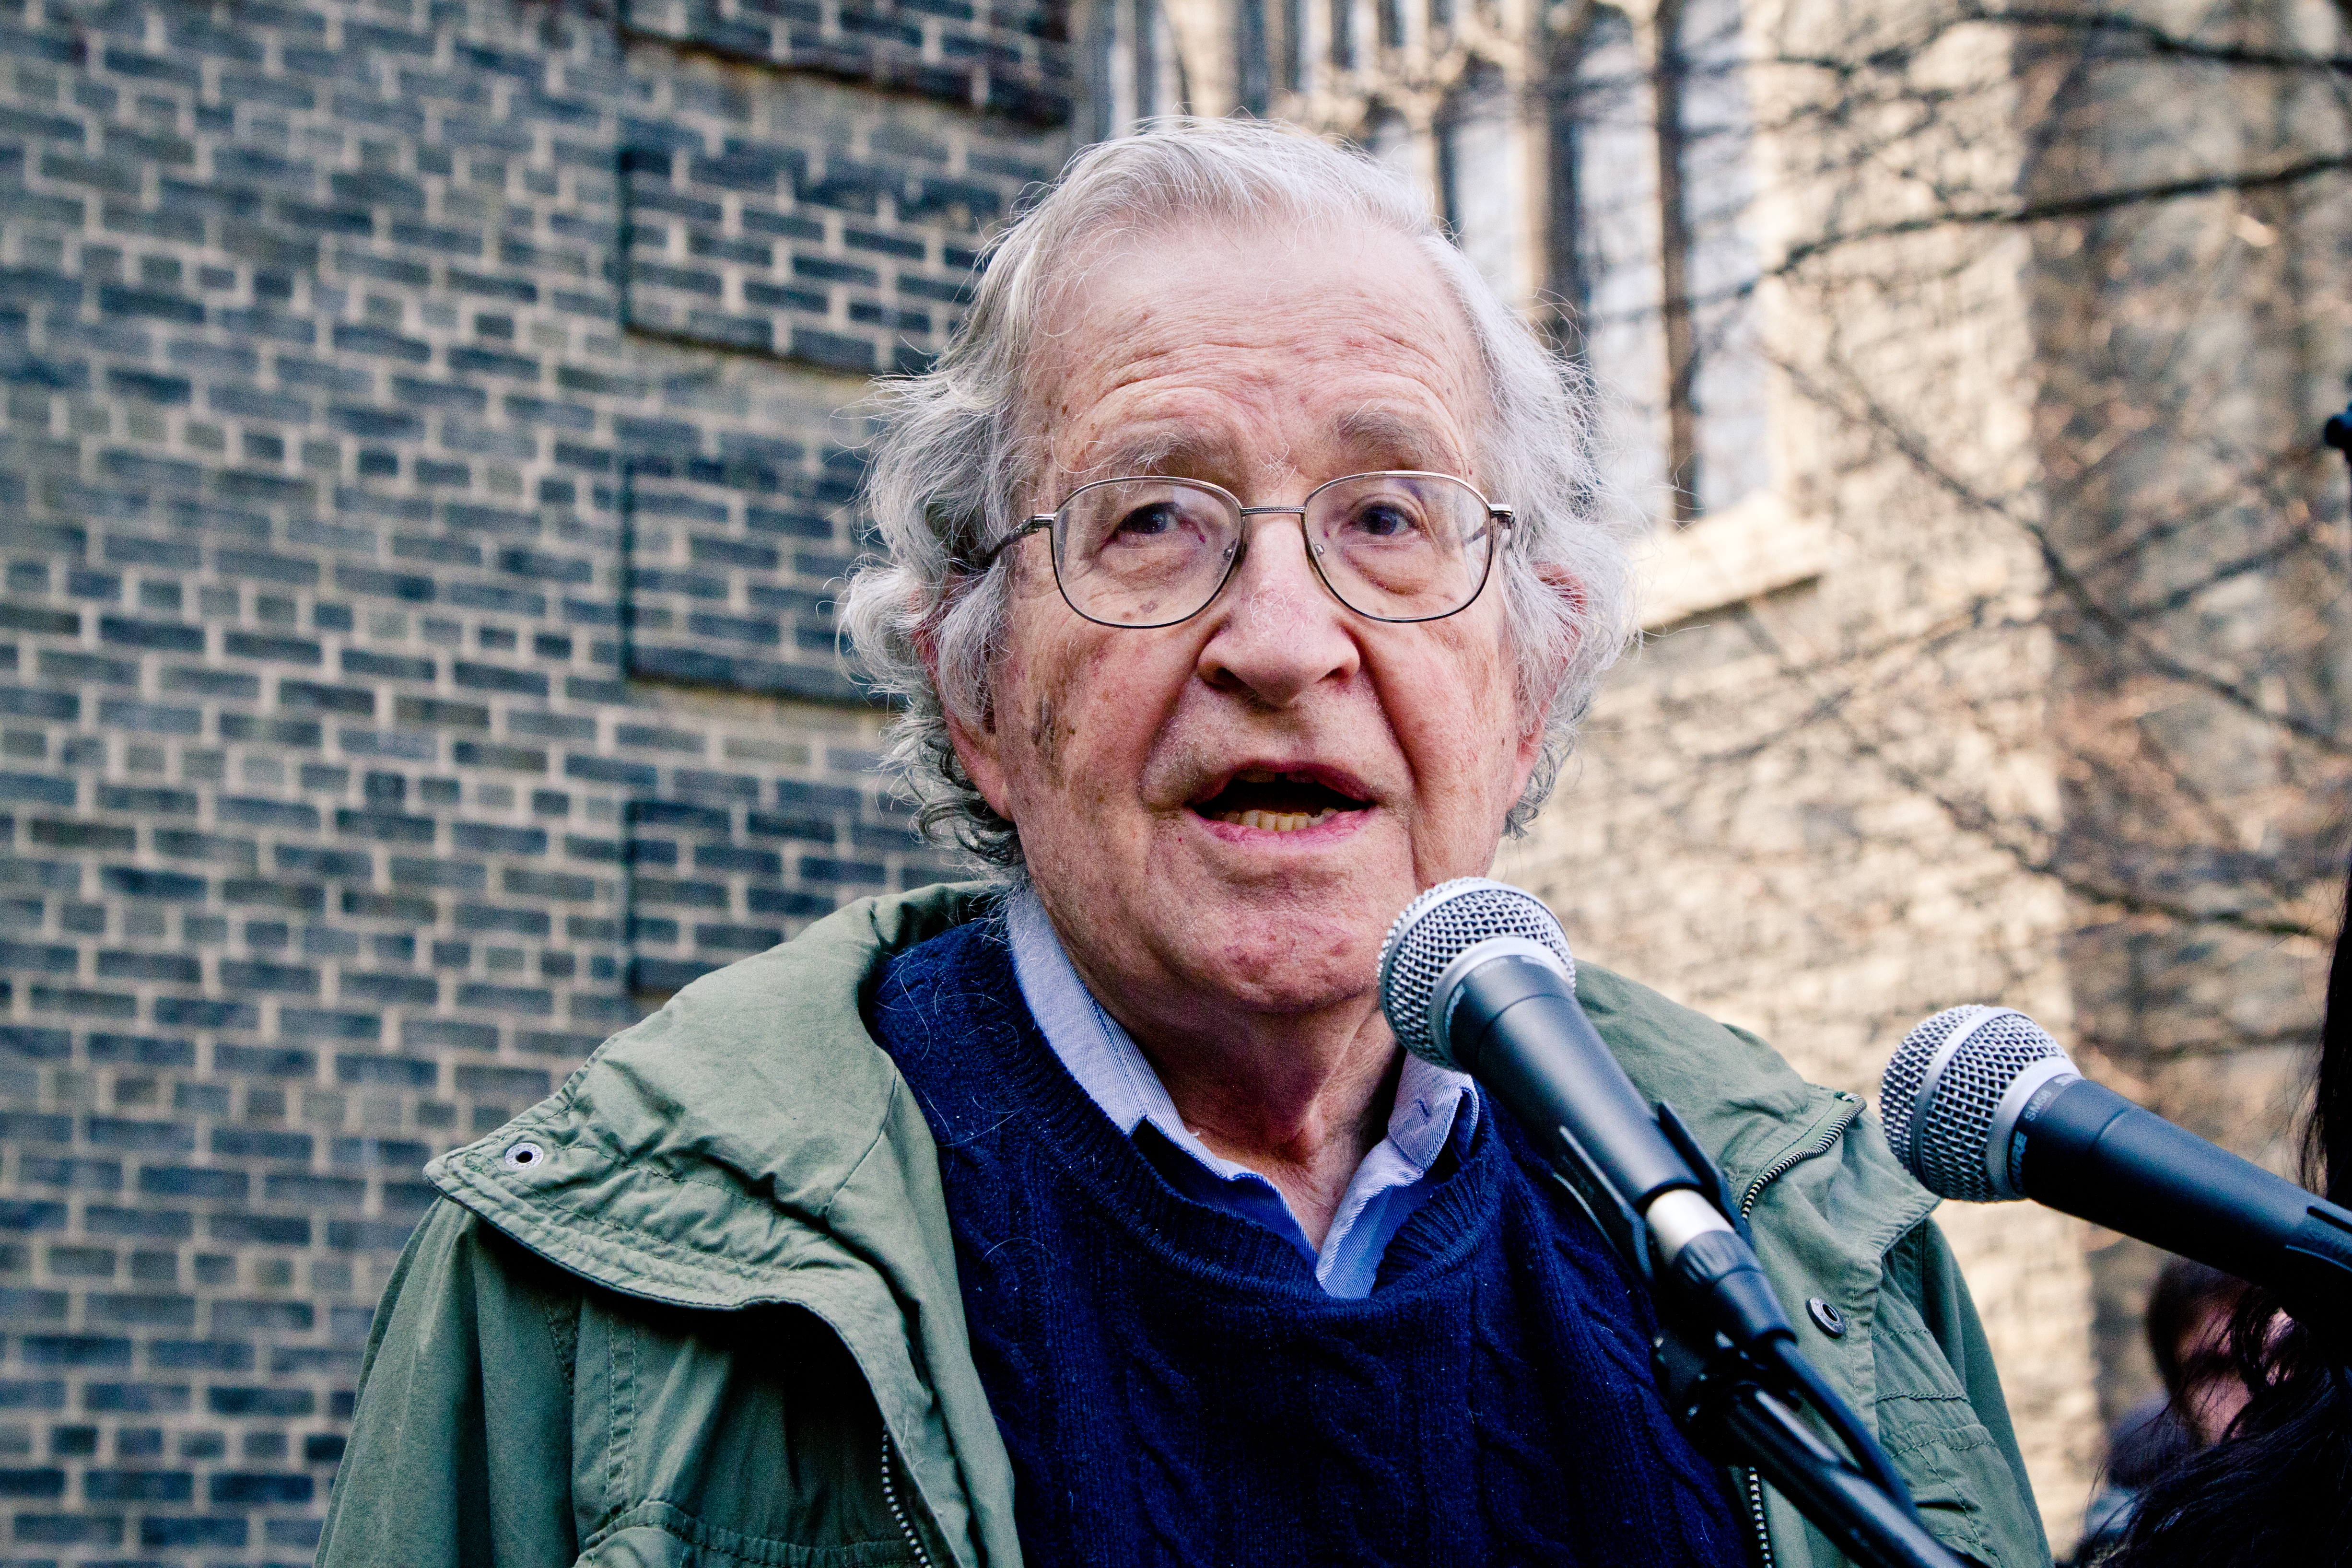 Noam Chomsky photo #100921, Noam Chomsky image